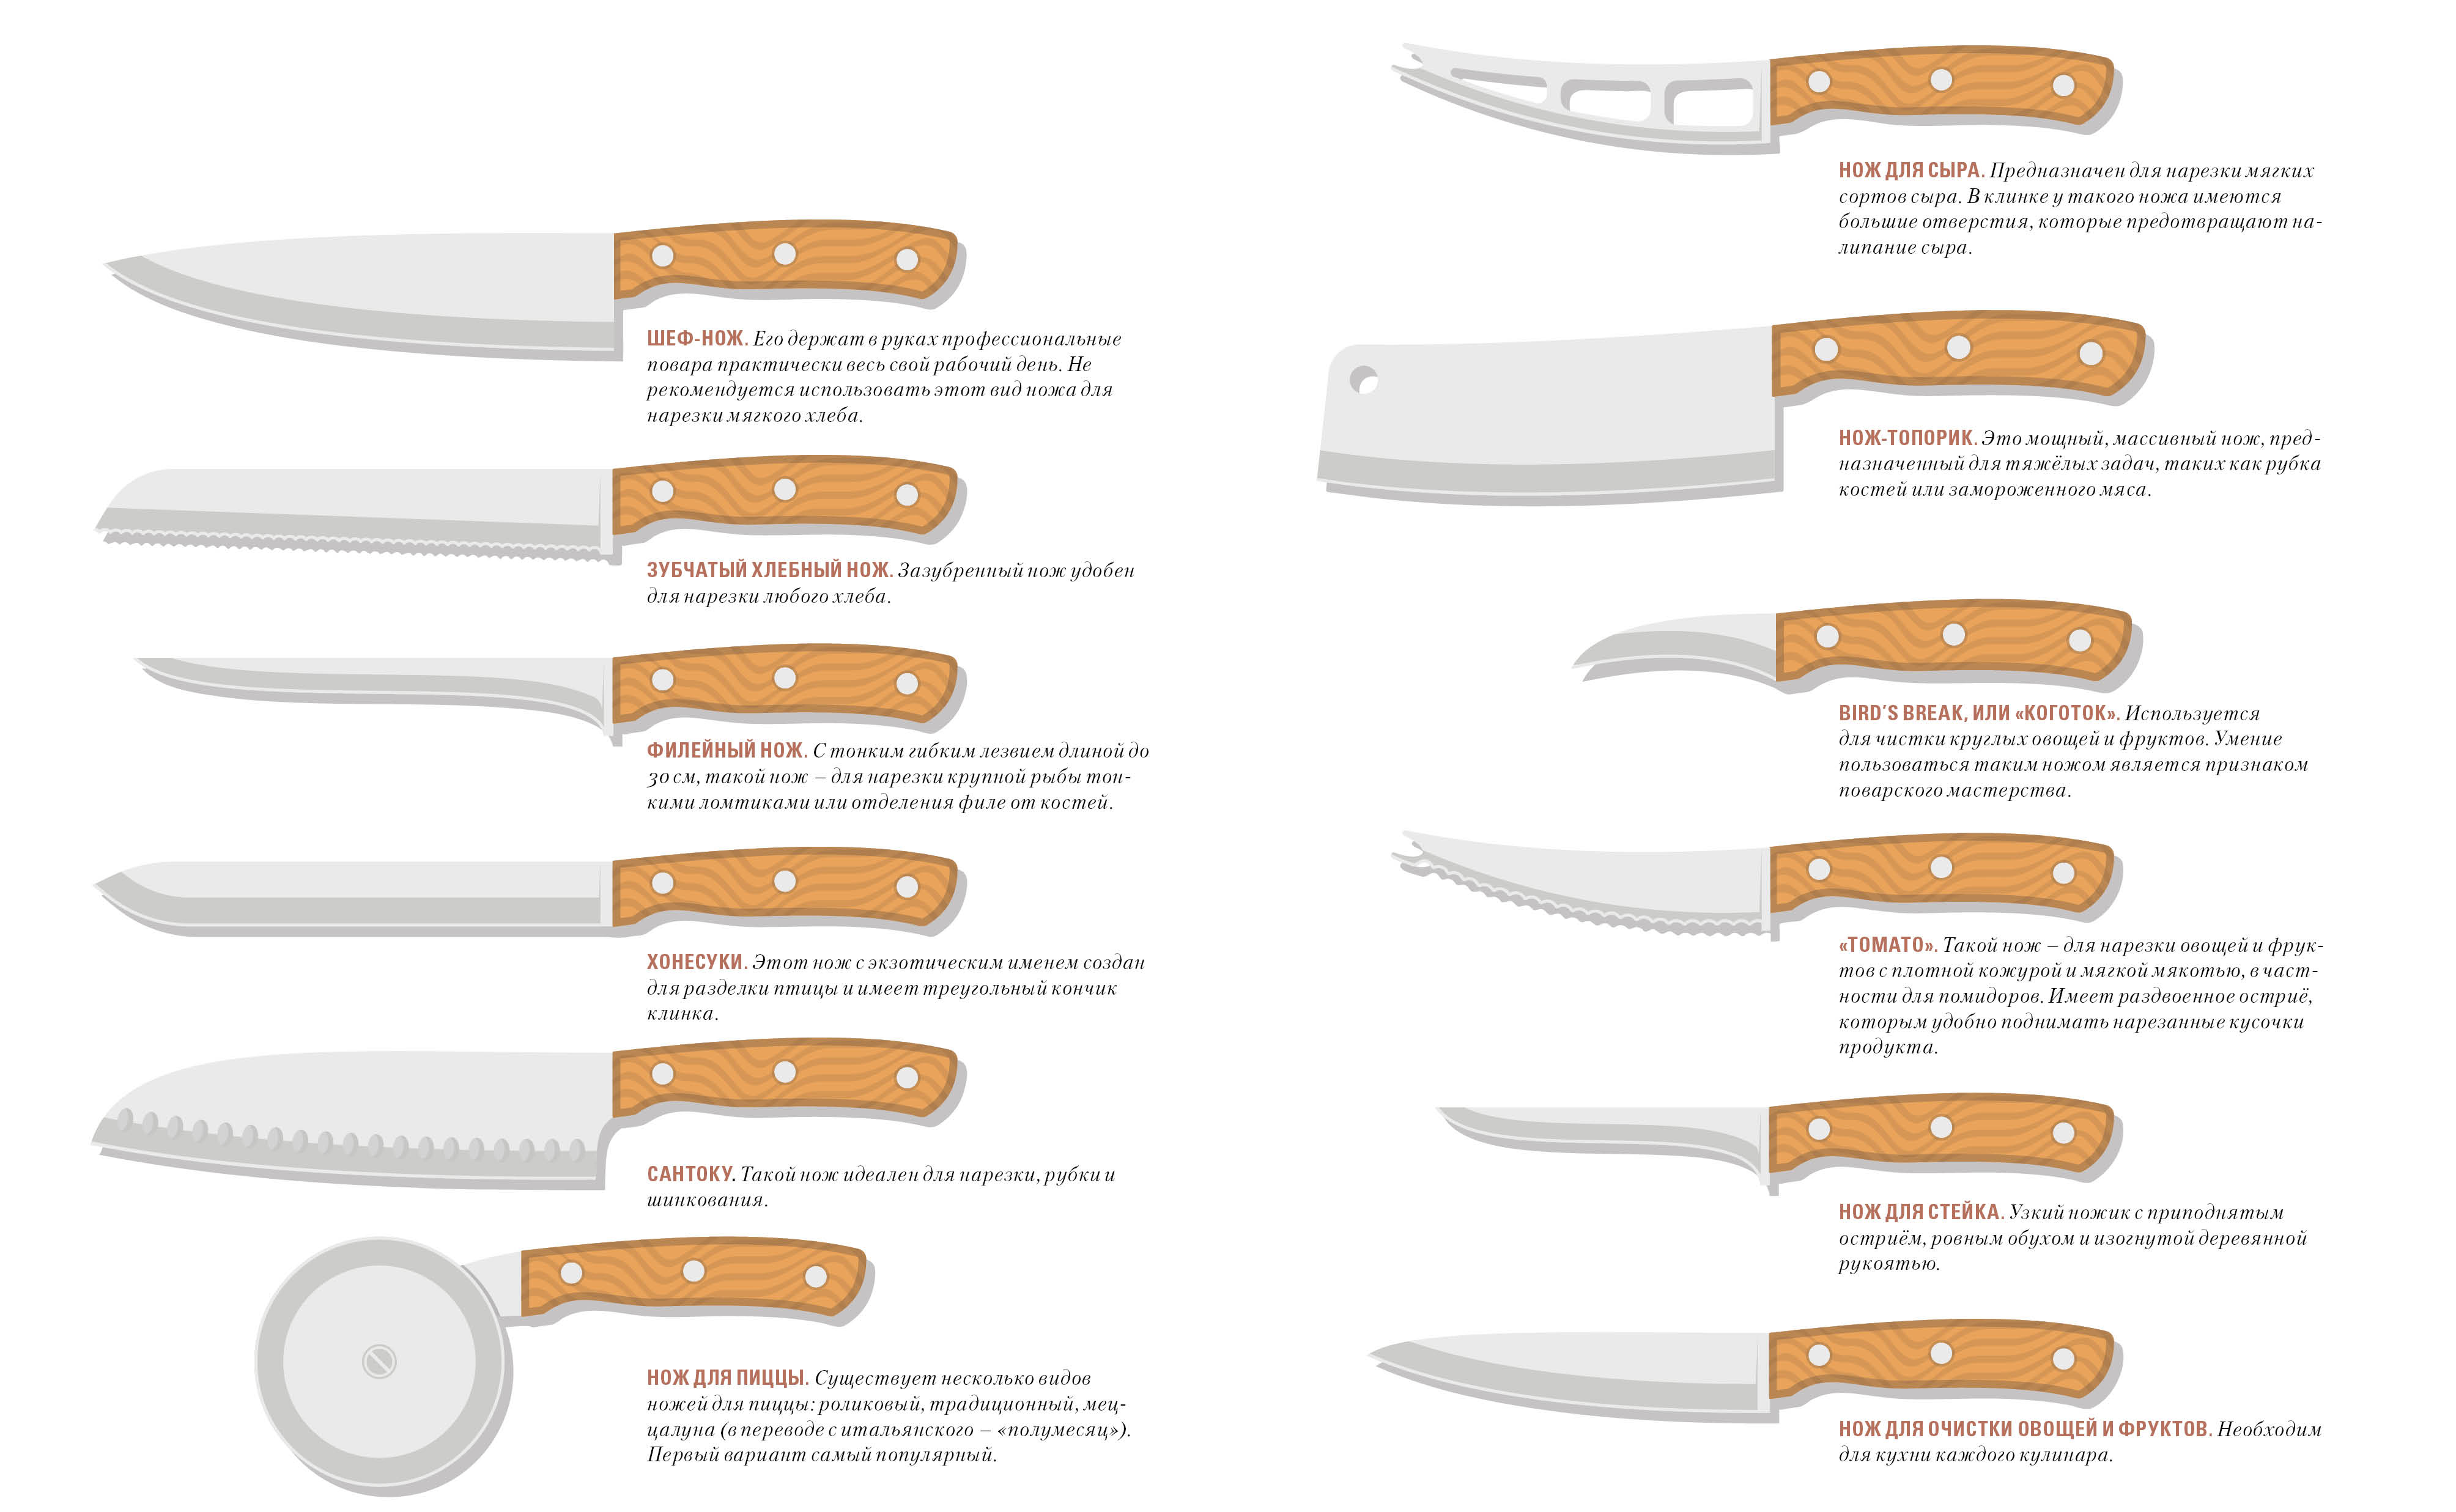 Основные виды кухонных ножей. давайте разберемся, какой нож для чего нужен? | интернет-магазин nozhikov.ru